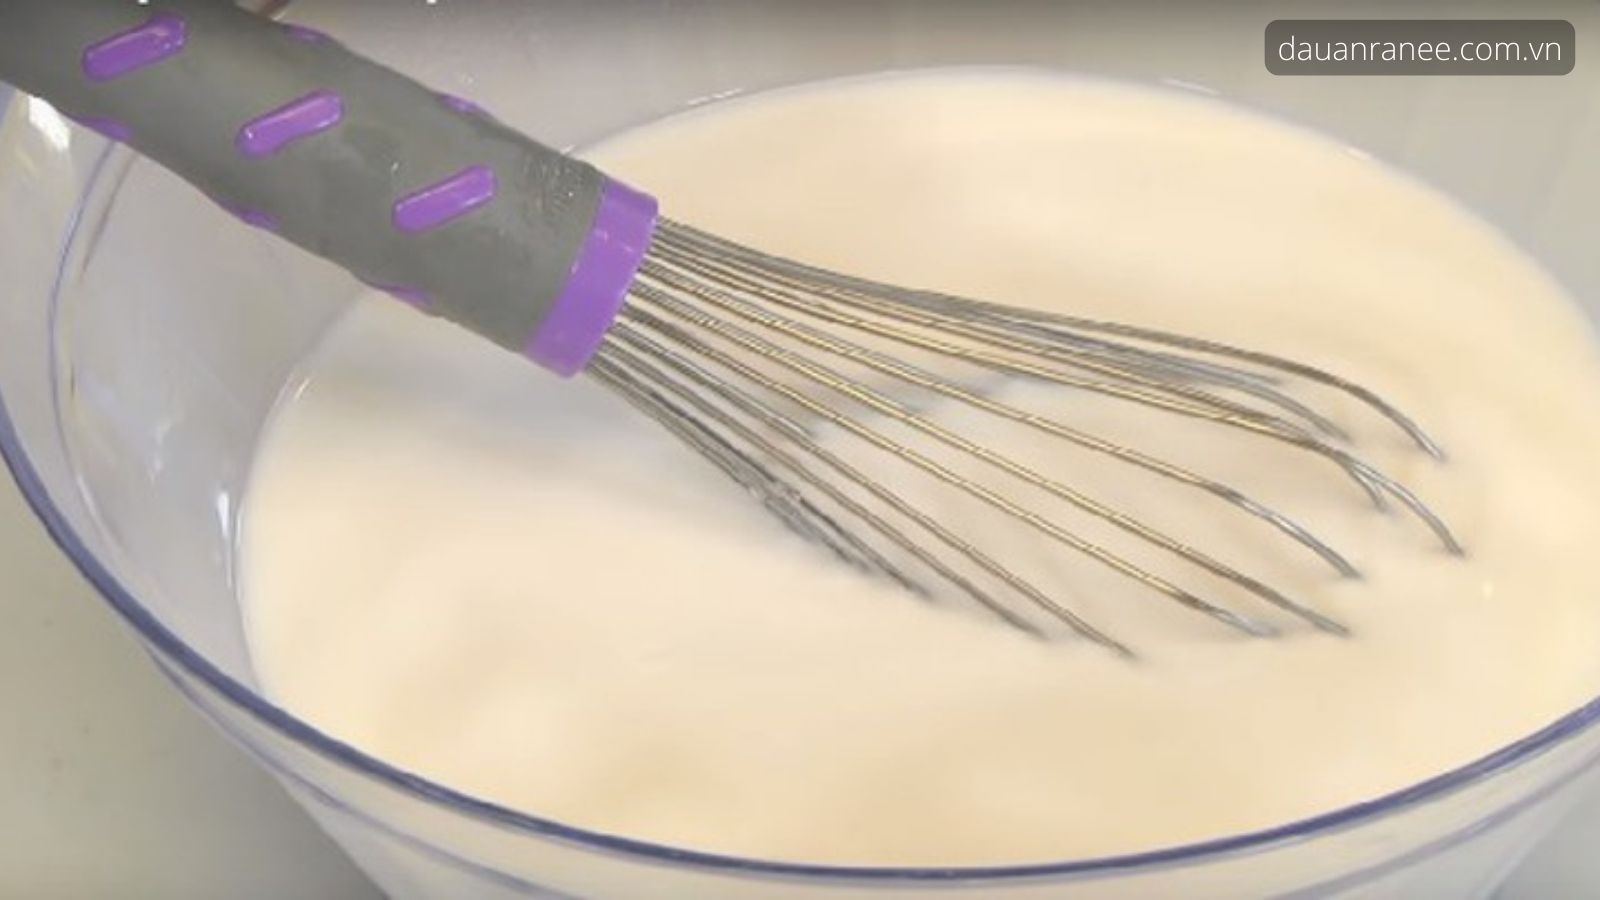 Quá trình thực hiện cách làm bánh chuối hấp bột cơ bản